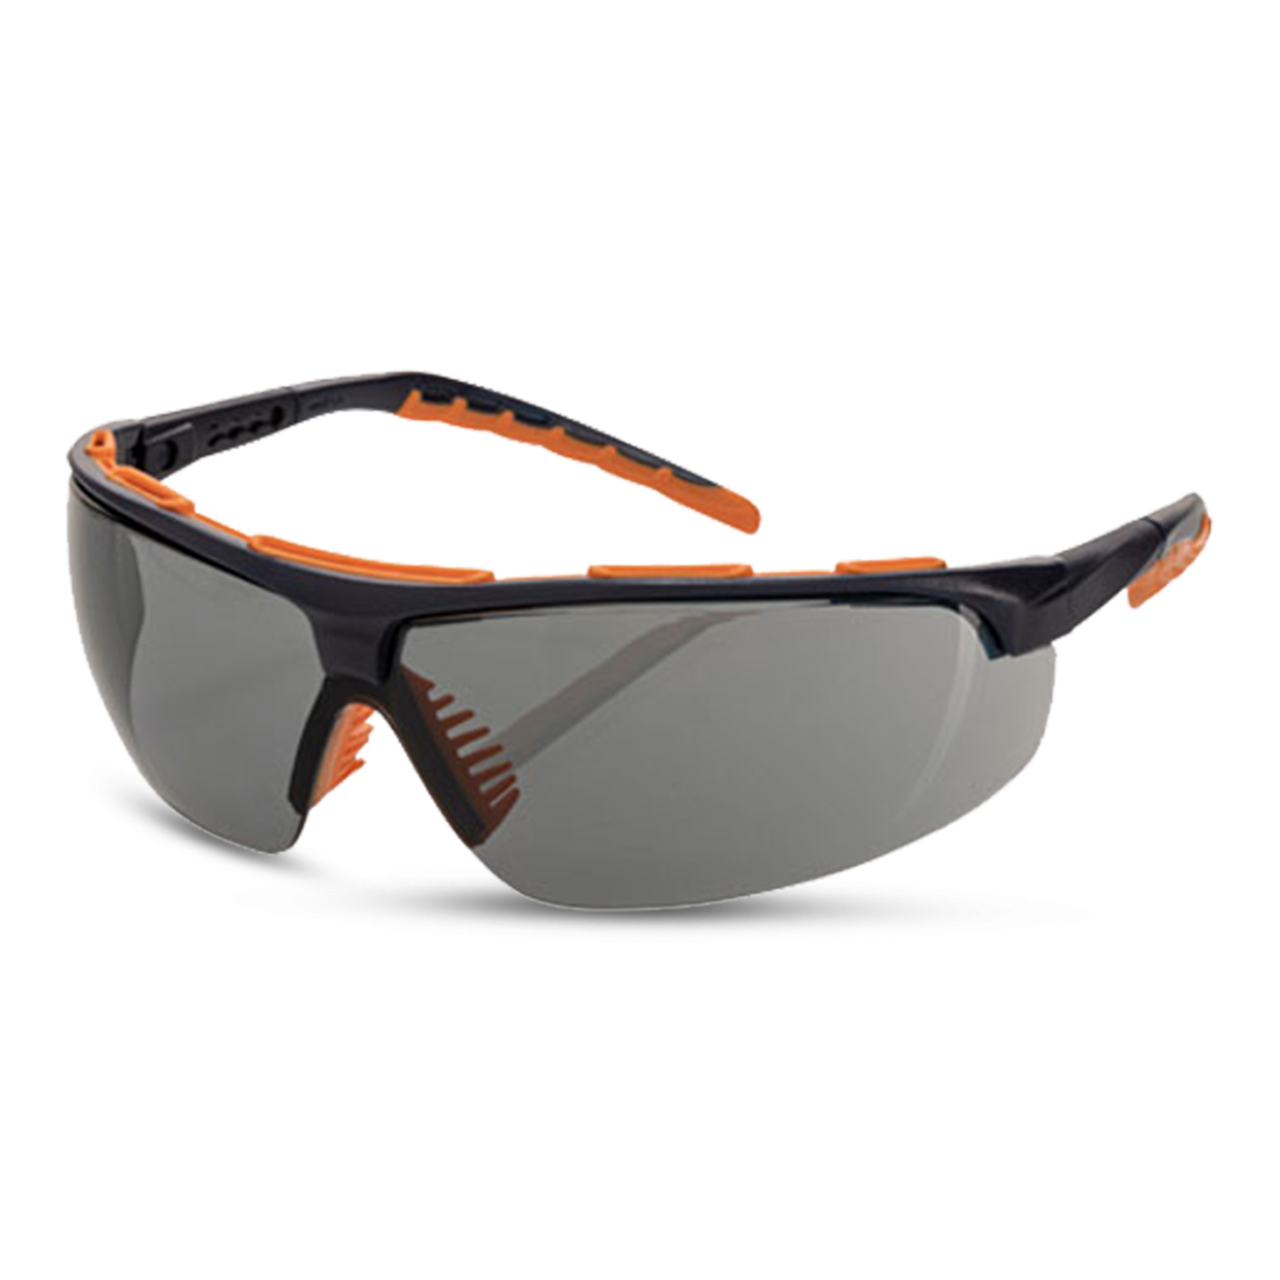 ARTISPEC® 300 Schutzbrille navy-blue orange/smoke